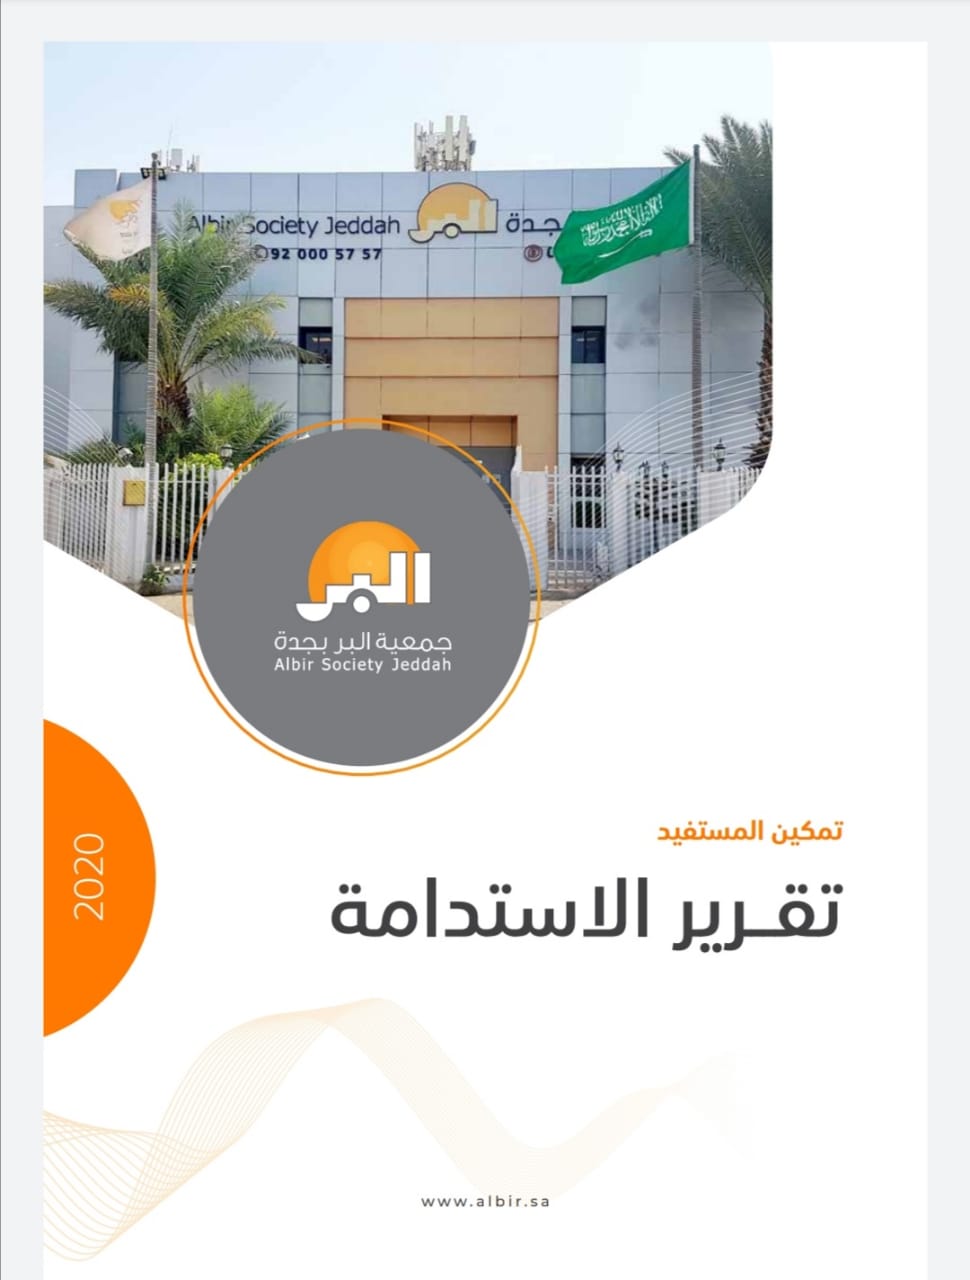 “بر جدة” تصدر تقريرها الأول للاستدامة بمعايير حوكمة عالية تستشرف رؤية ٢٠٣٠